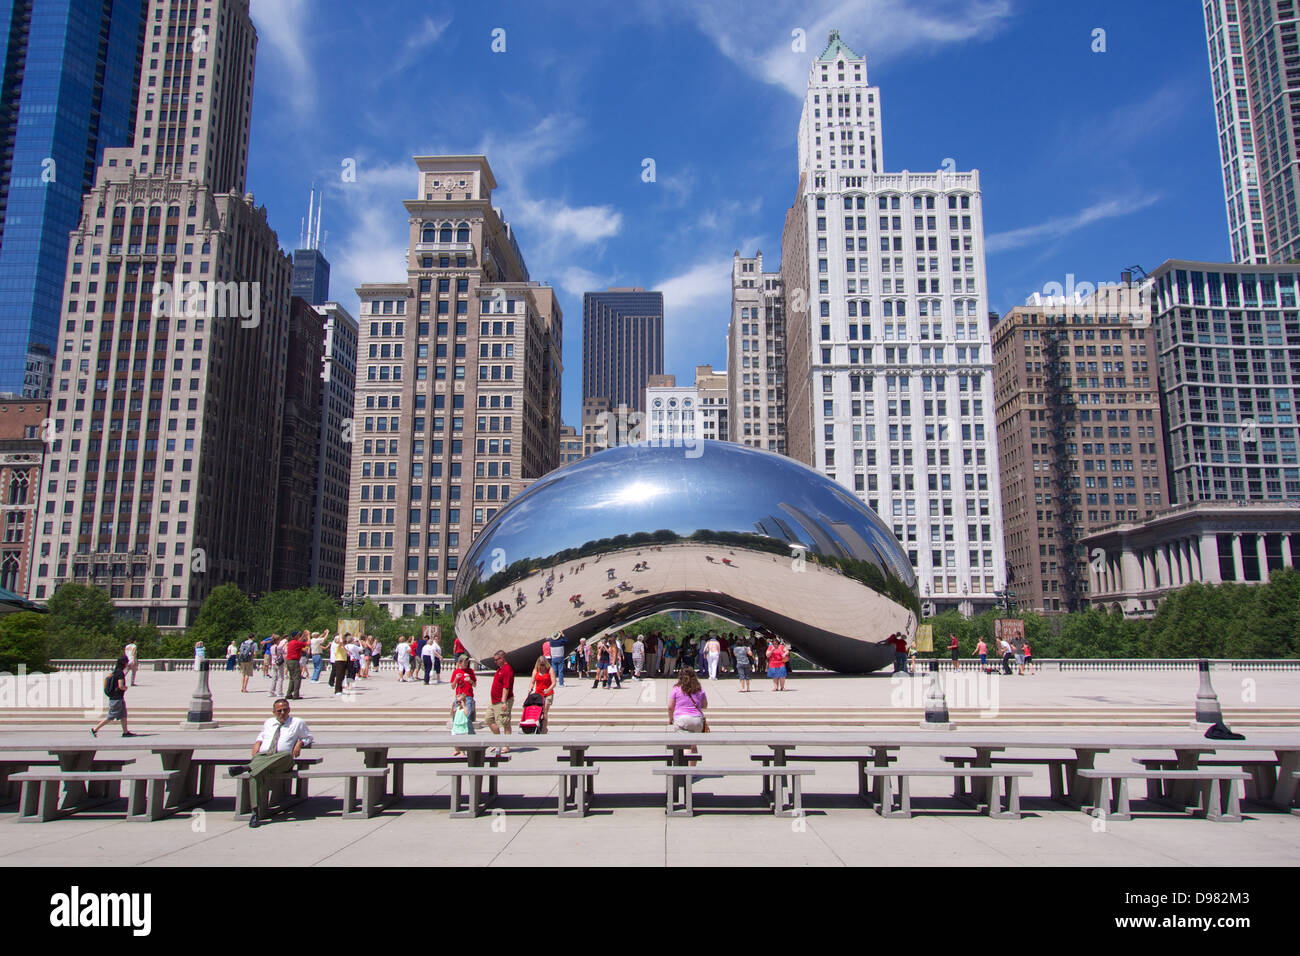 Cloud Gate d'Anish Kapoor, aussi connu sous le nom de "Bean.' Le Millennium Park, Chicago. Banque D'Images